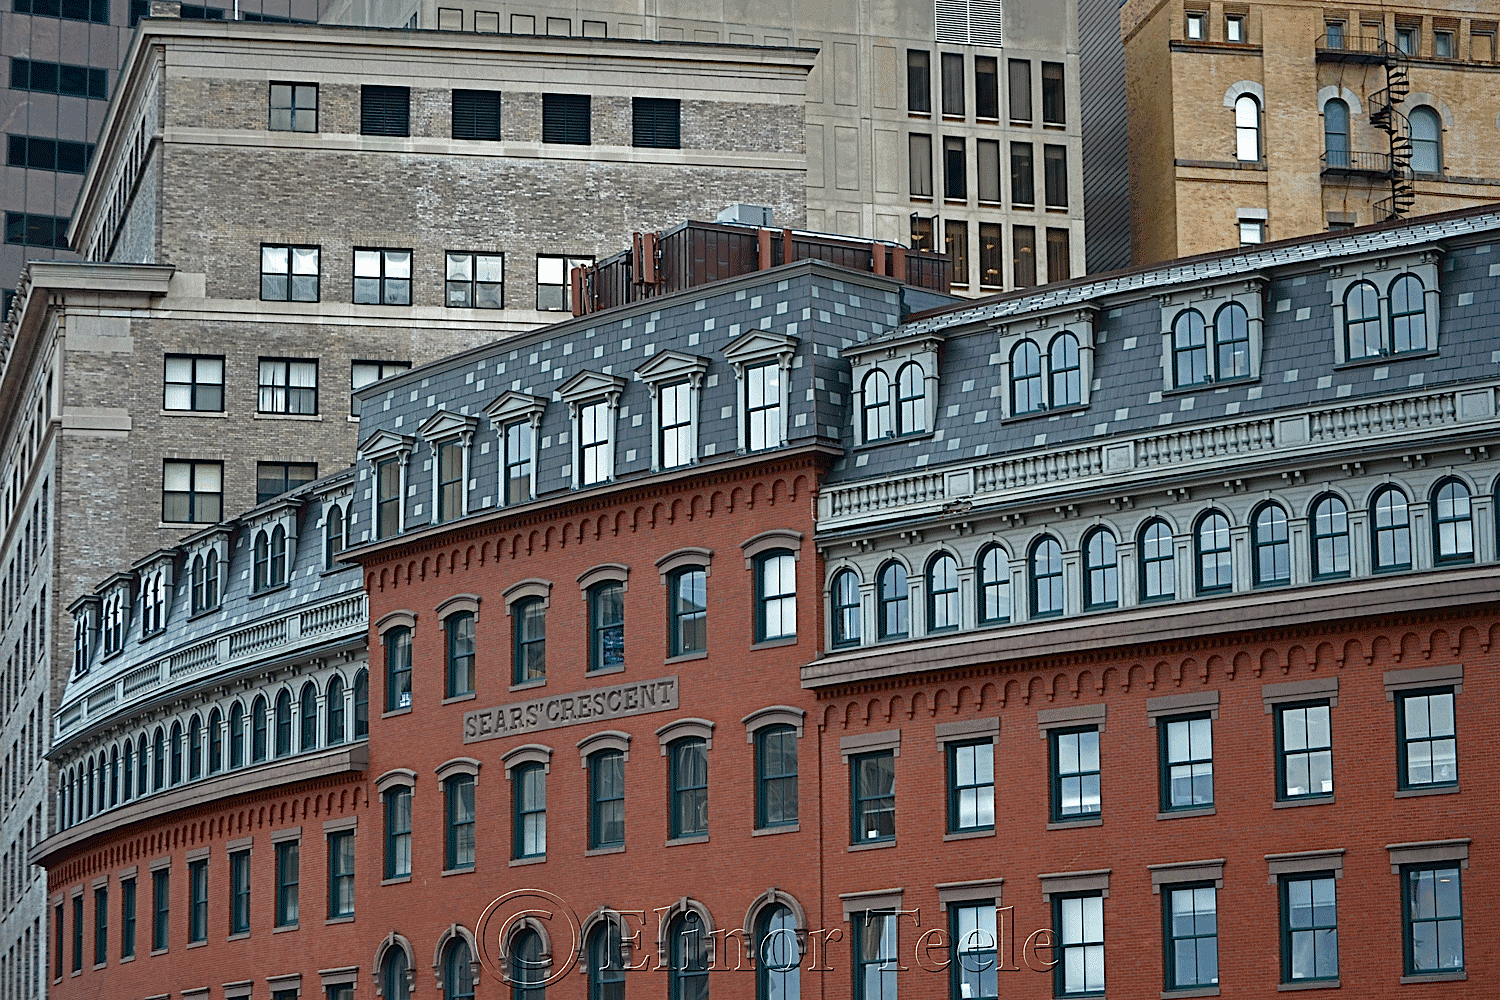 Sears' Crescent, Boston MA